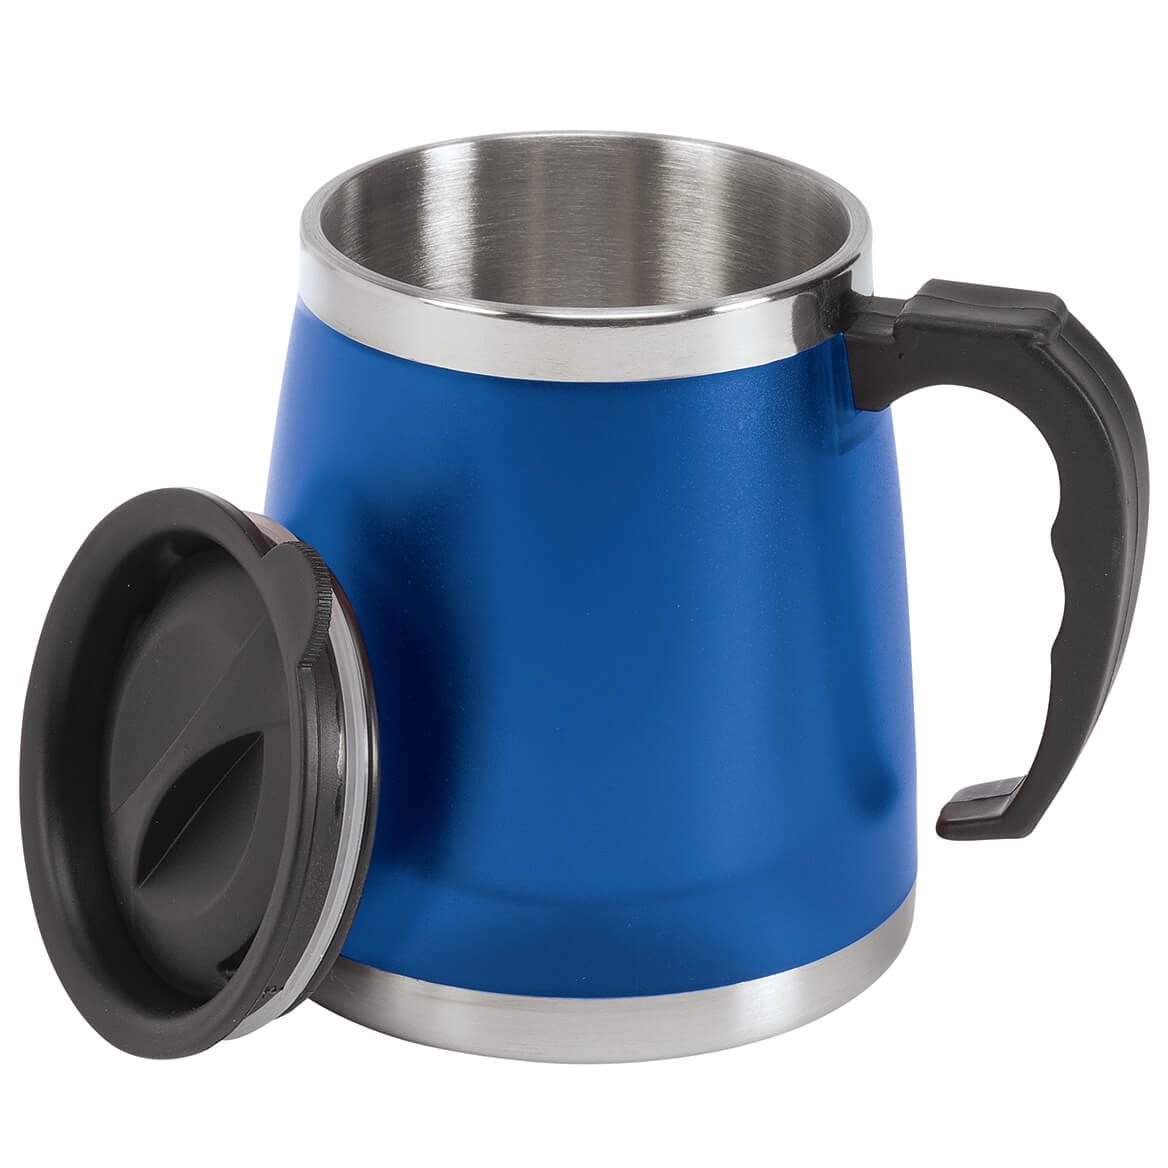 Insulated Mug with Lid + '-' + 376582